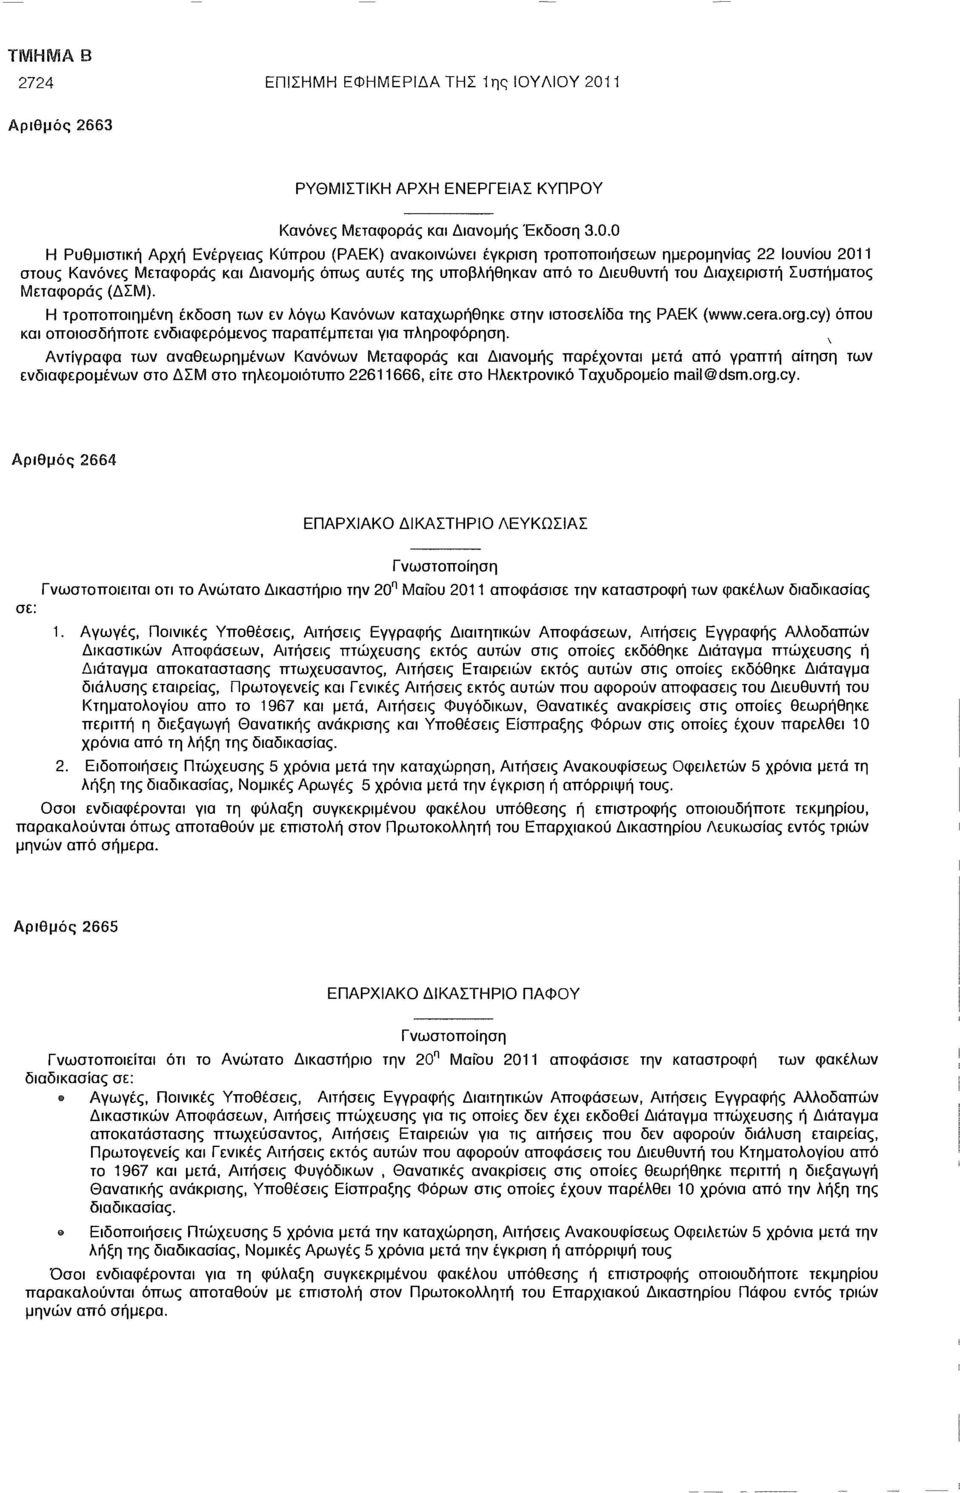 0 Η Ρυθμιστική Αρχή Ενέργειας Κύπρου (ΡΑΕΚ) ανακοινώνει έγκριση τροποποιήσεων ημερομηνίας 22 Ιουνίου 2011 στους Κανόνες Μεταφοράς και Διανομής όπως αυτές της υποβλήθηκαν από το Διευθυντή του